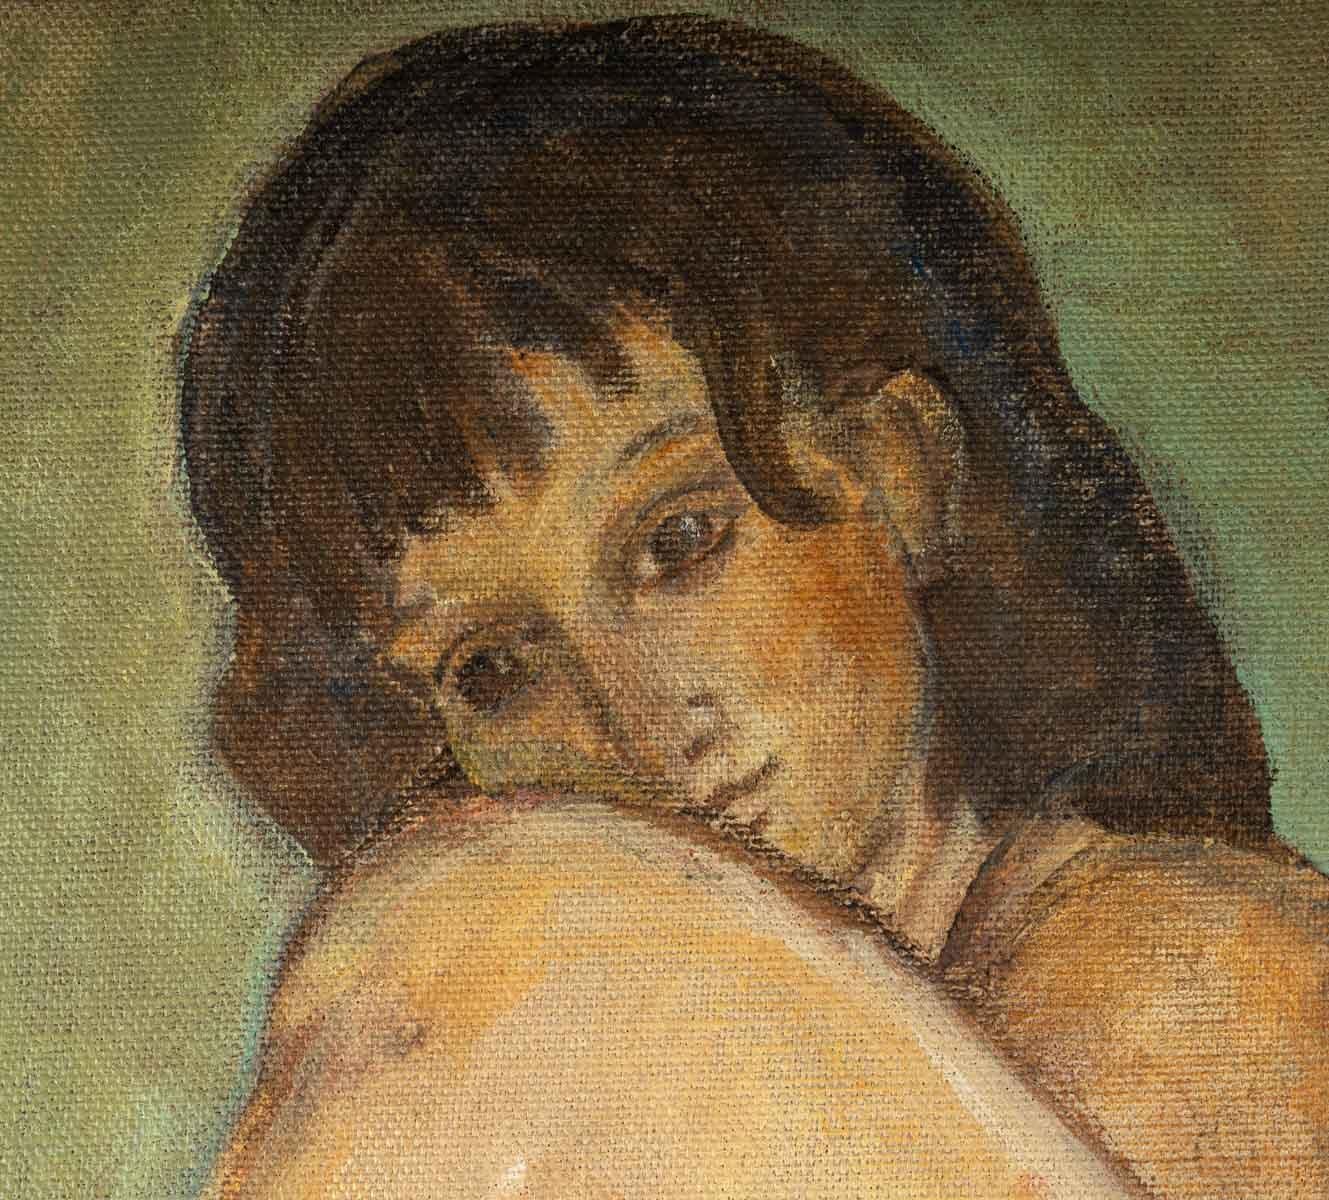 Nude Woman, oil on canvas, 20th century.
Evelyne Luez, Ecole de Paris 
Measures: H: 81, W: 65 cm, D: 2 cm.